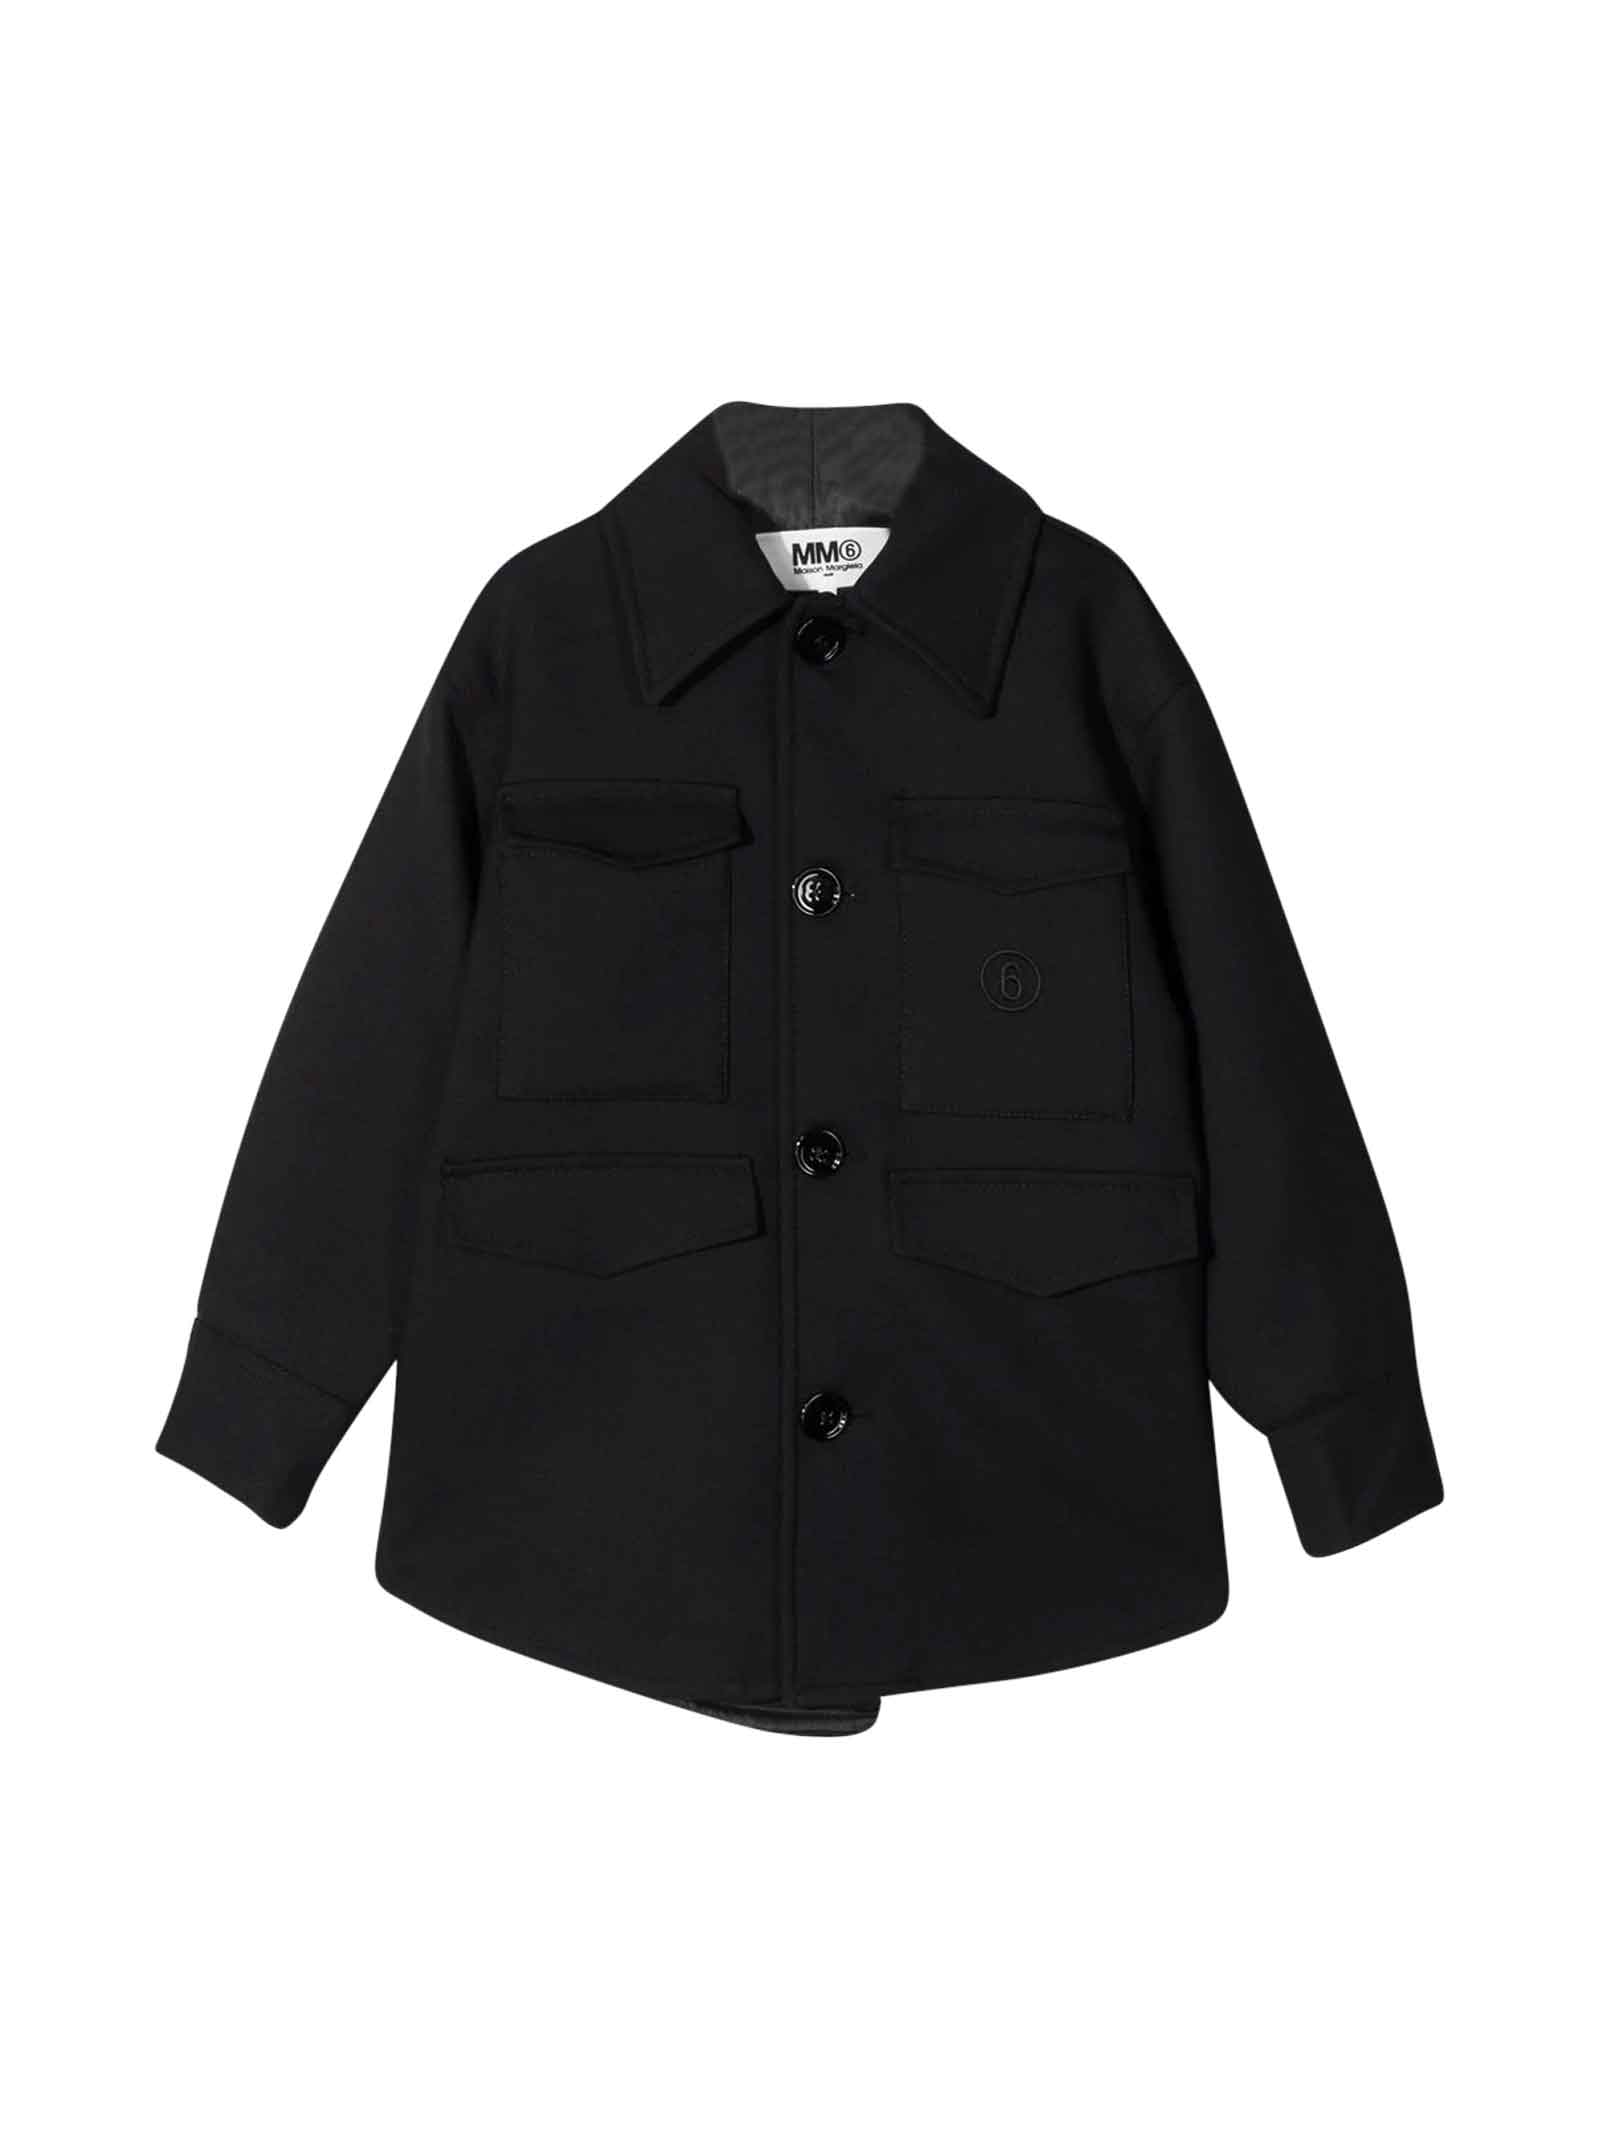 MM6 Maison Margiela Black Shirt-jacket With Embroidered Logo